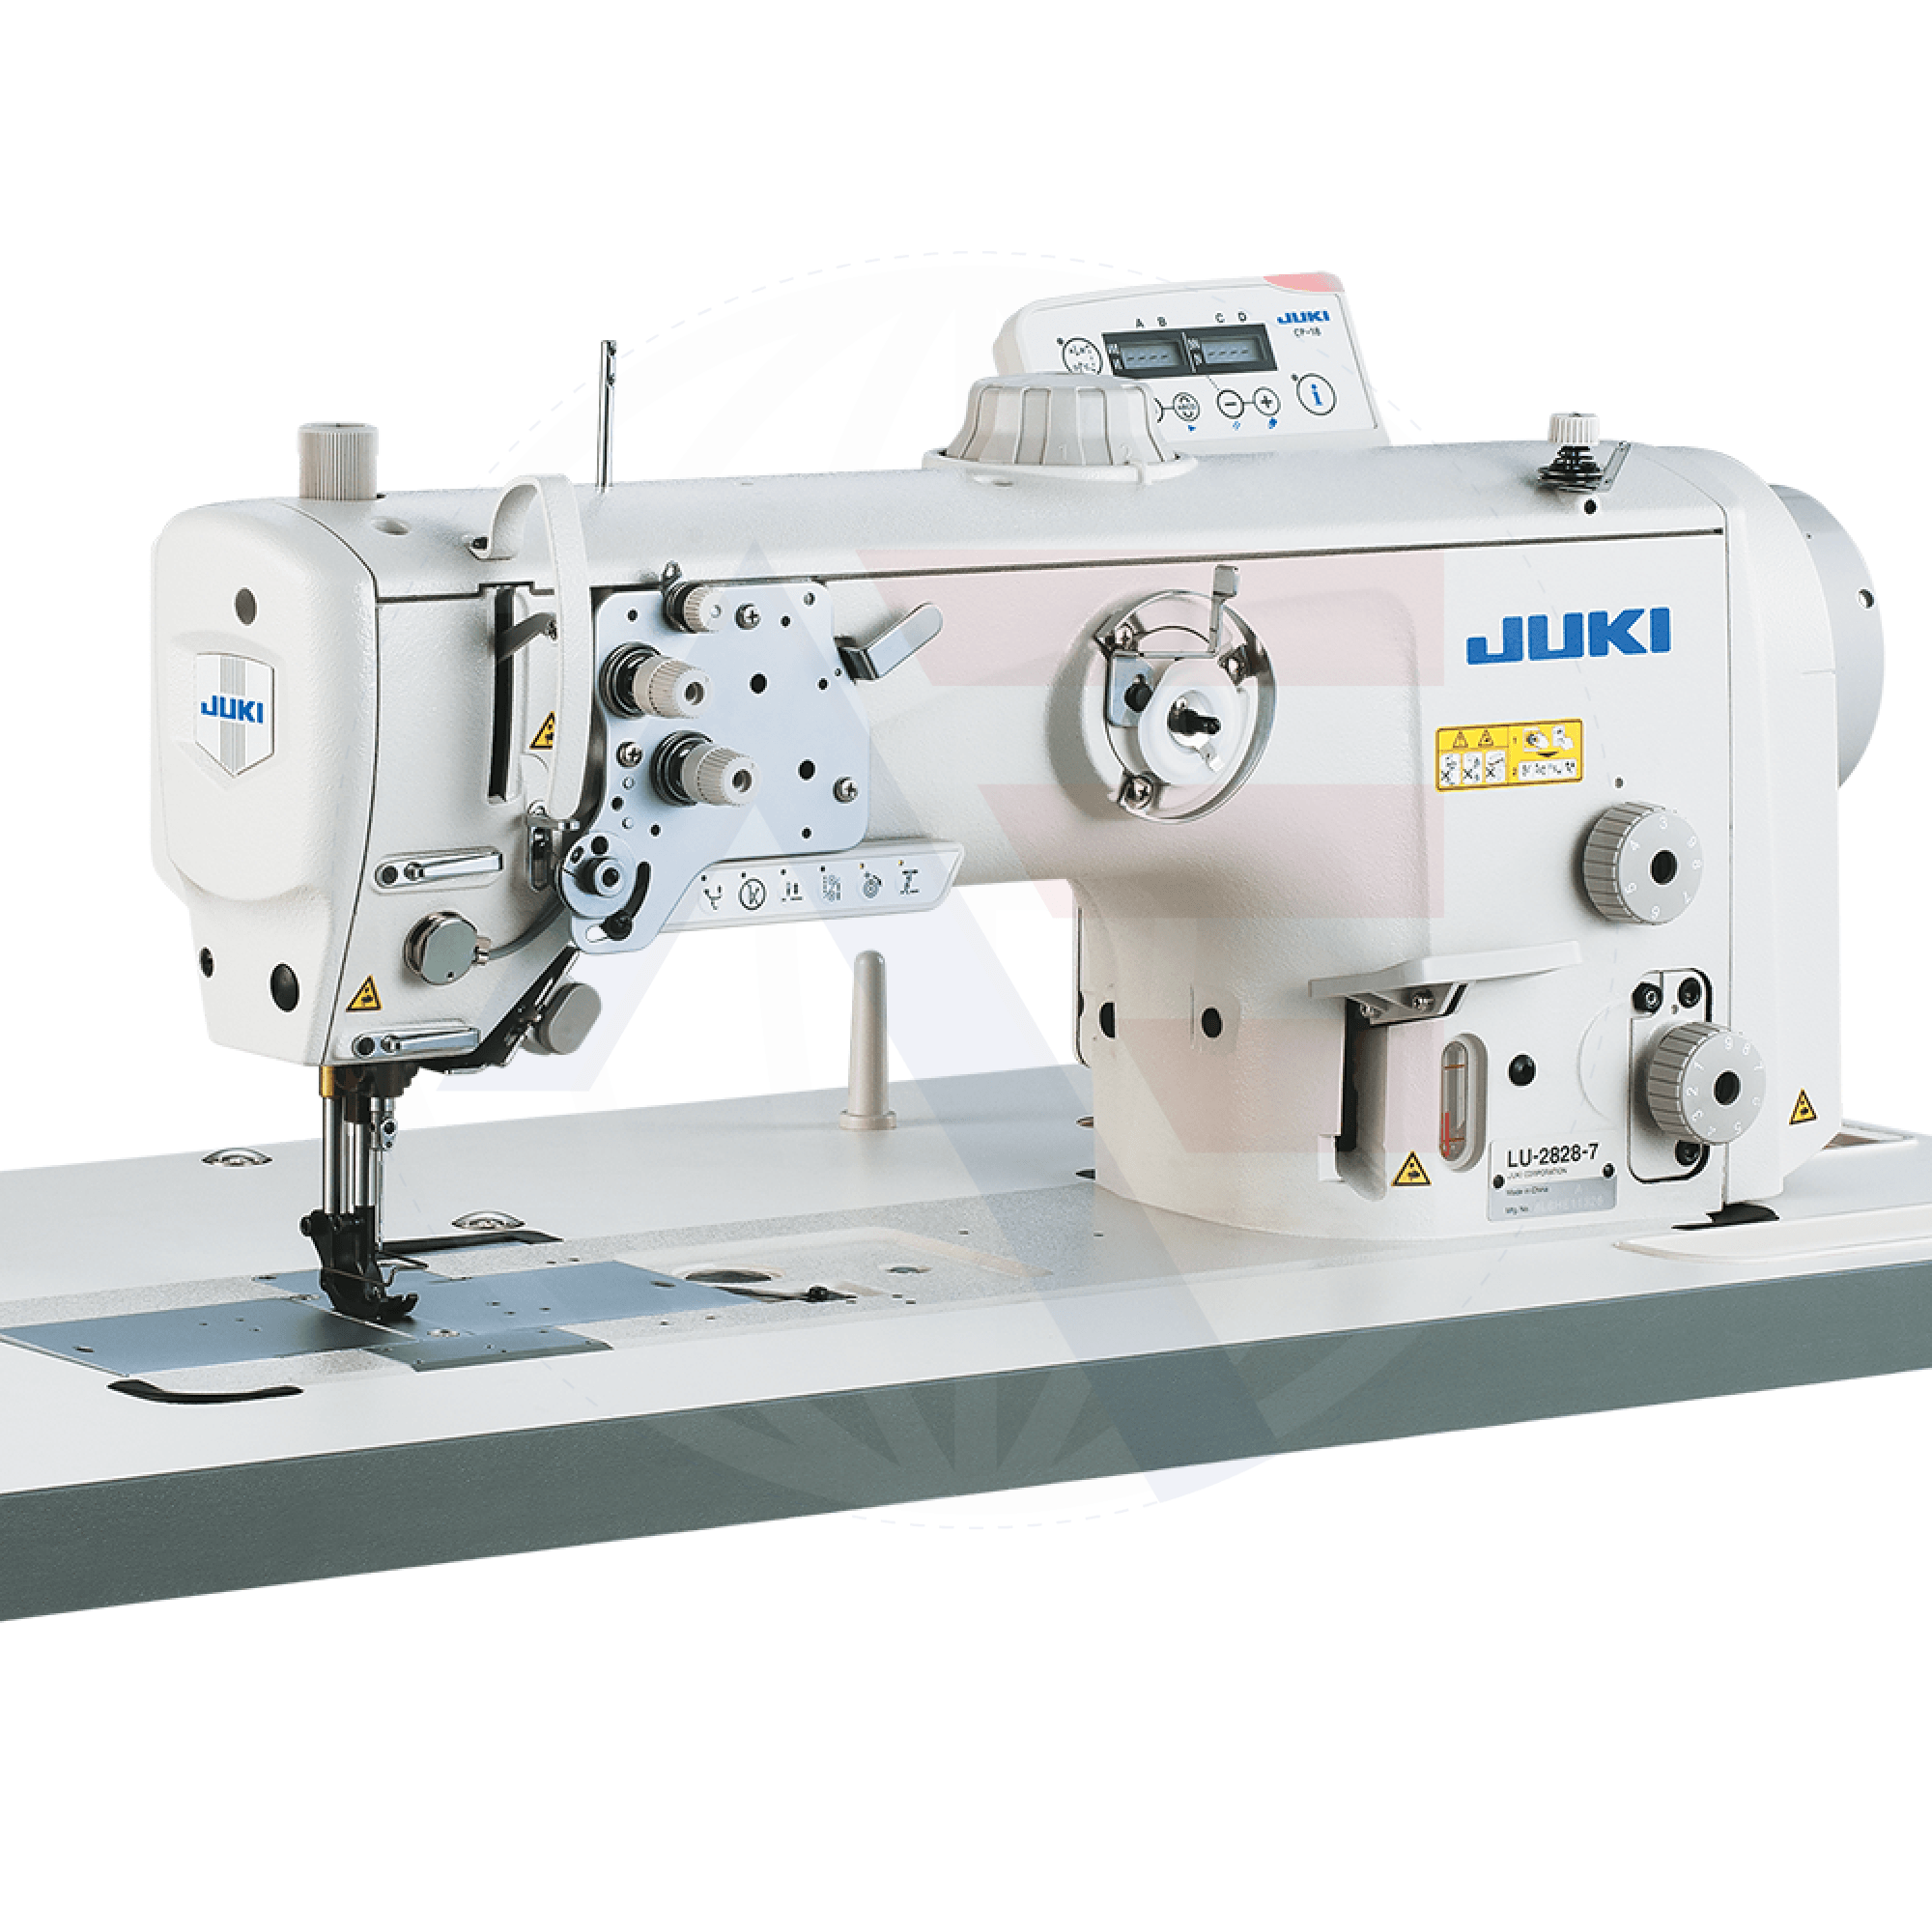 Juki Lu-2810Esal-7 1-Needle Walking-Foot Machine Sewing Machines